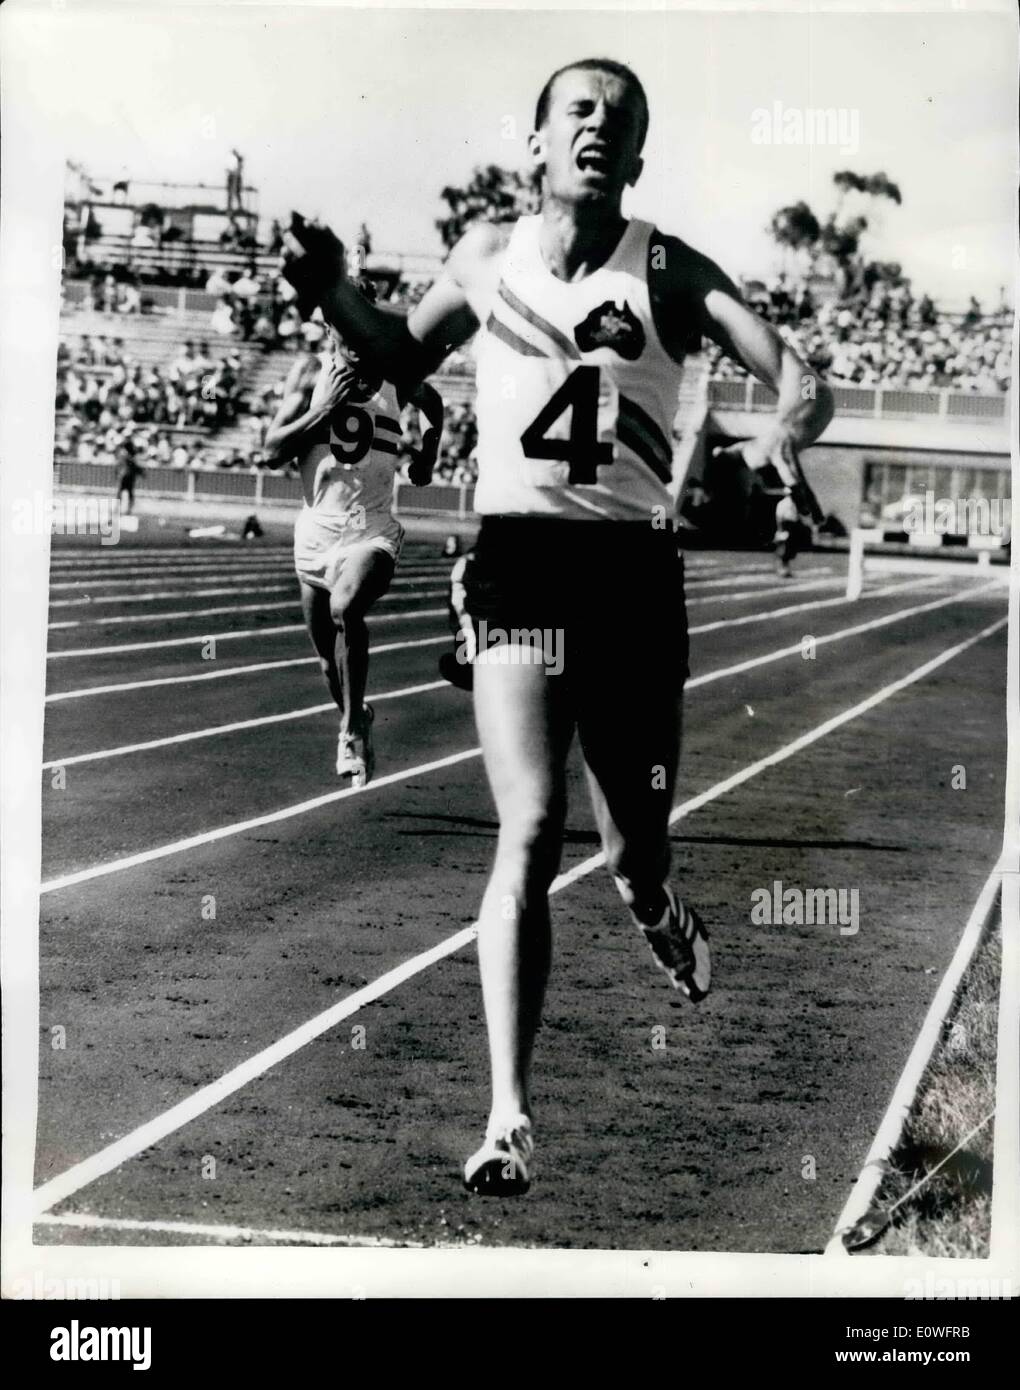 11. November 1962 - Vincent gewinnt Goldmedaille für Australien: Foto zeigt t.a. Vincent erreicht das Band am Ziel des 3000 Meter Hindernislauf und gewinnt eine Goldmedaille für Deutschland bei British Empire and Commonwealth Games in Perth Australien. Stockfoto